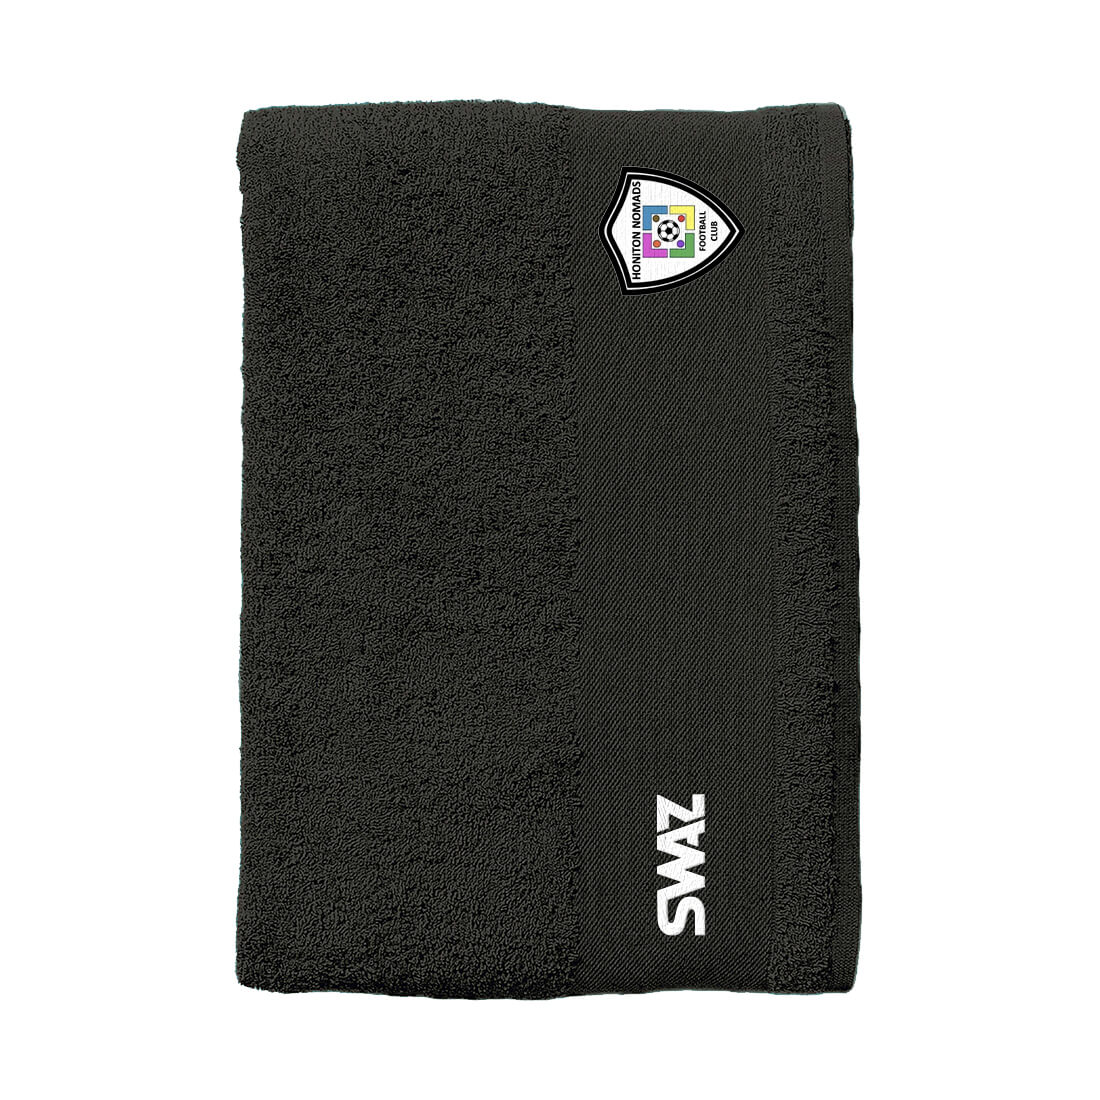 SWAZ Honiton Nomads Towel